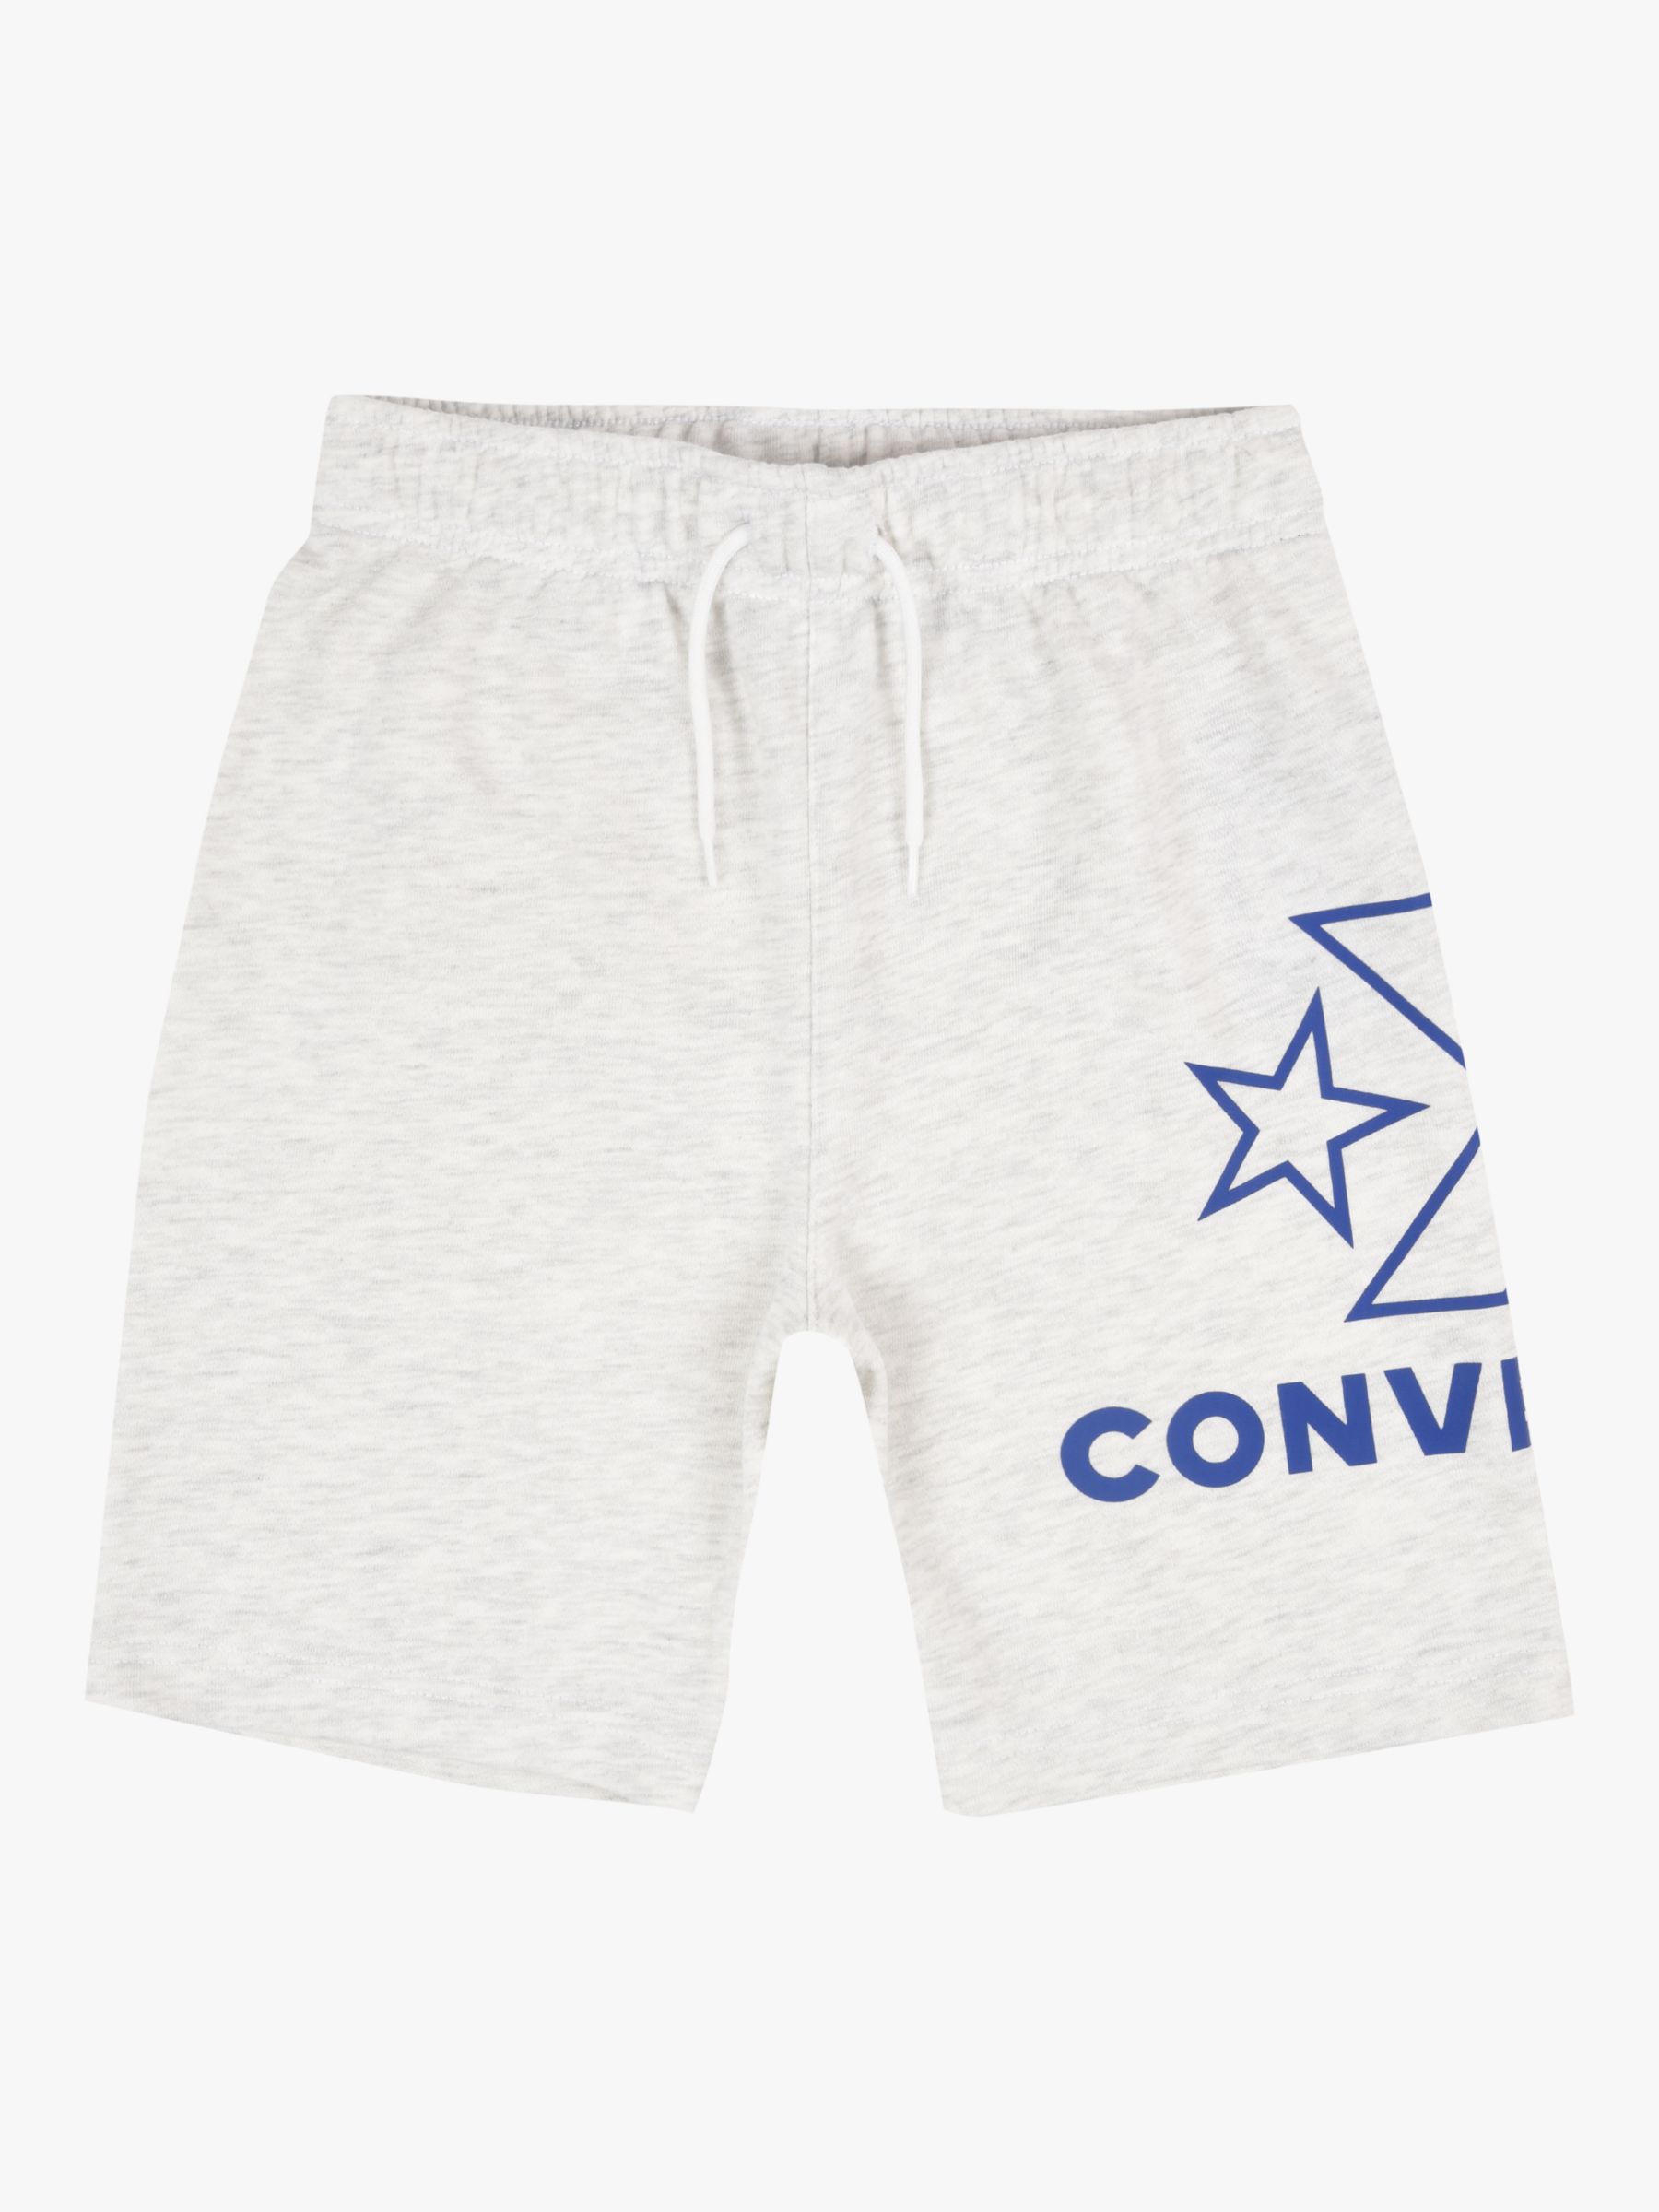 grey converse shorts